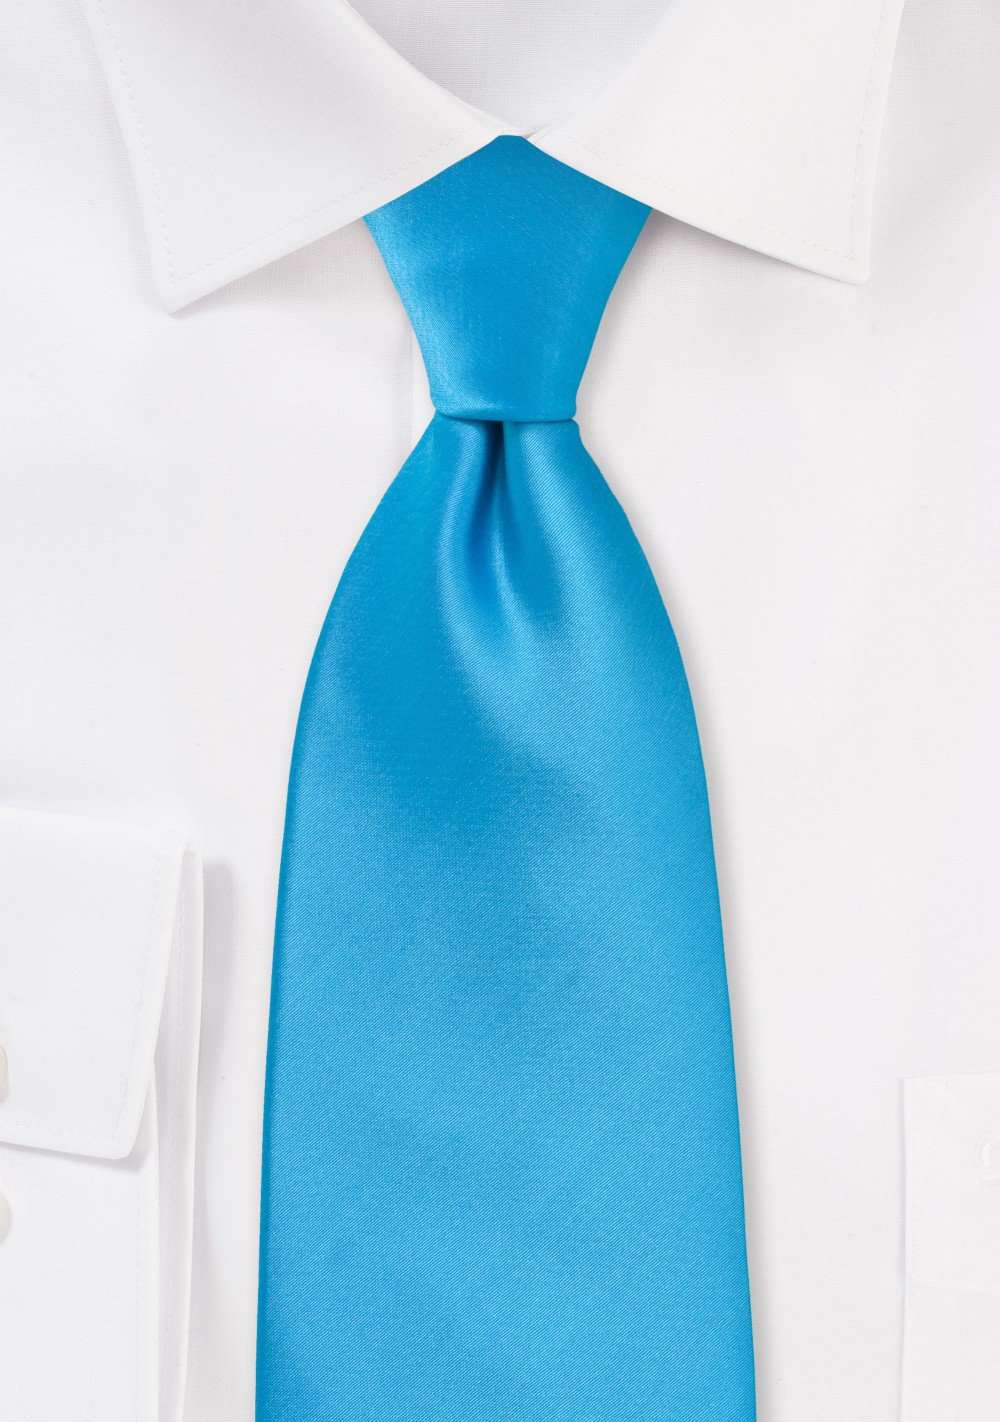 Cyan Solid Necktie - Men Suits